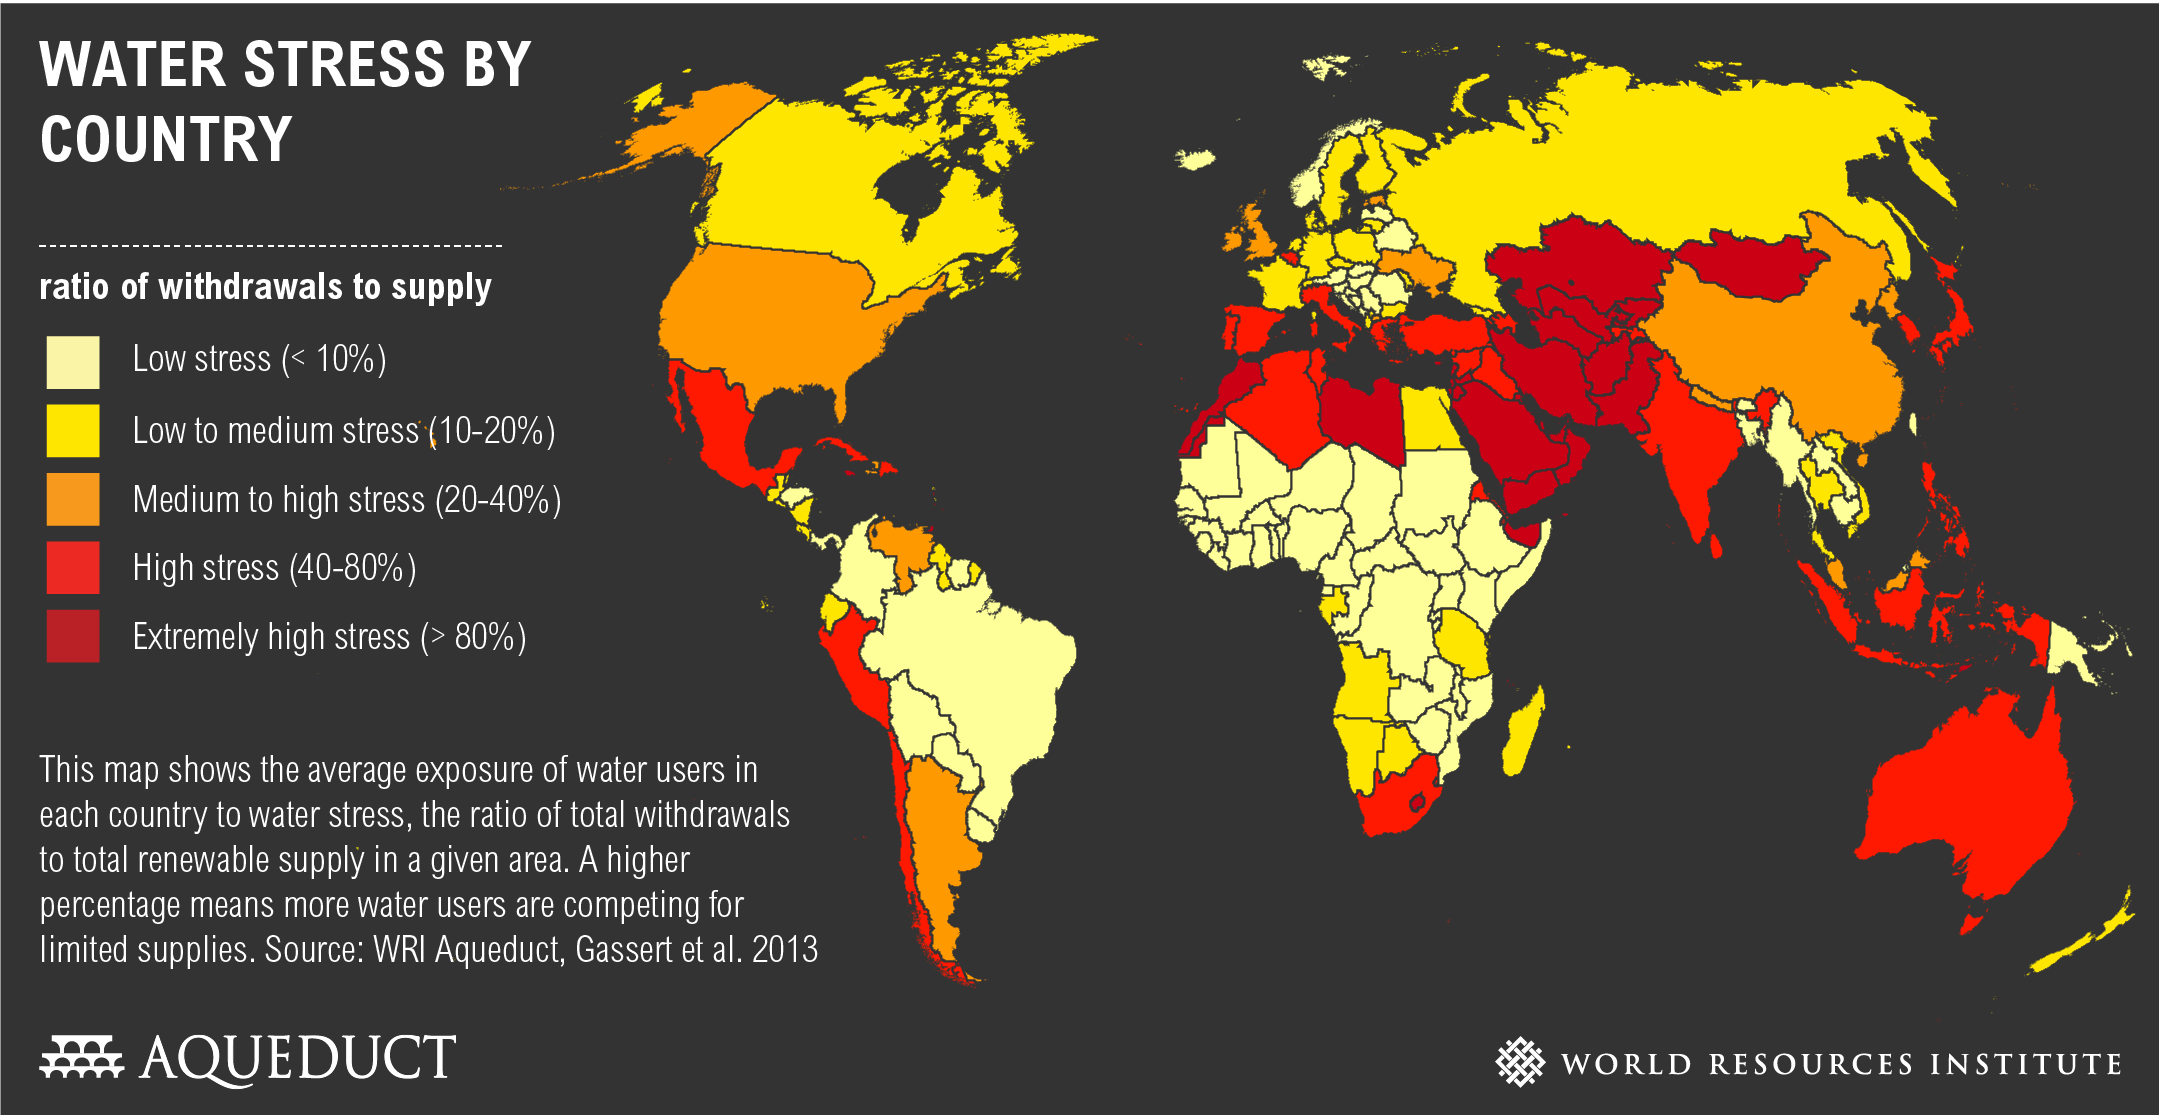 Carte du monde montrant les problèmes de sécheresse par pays